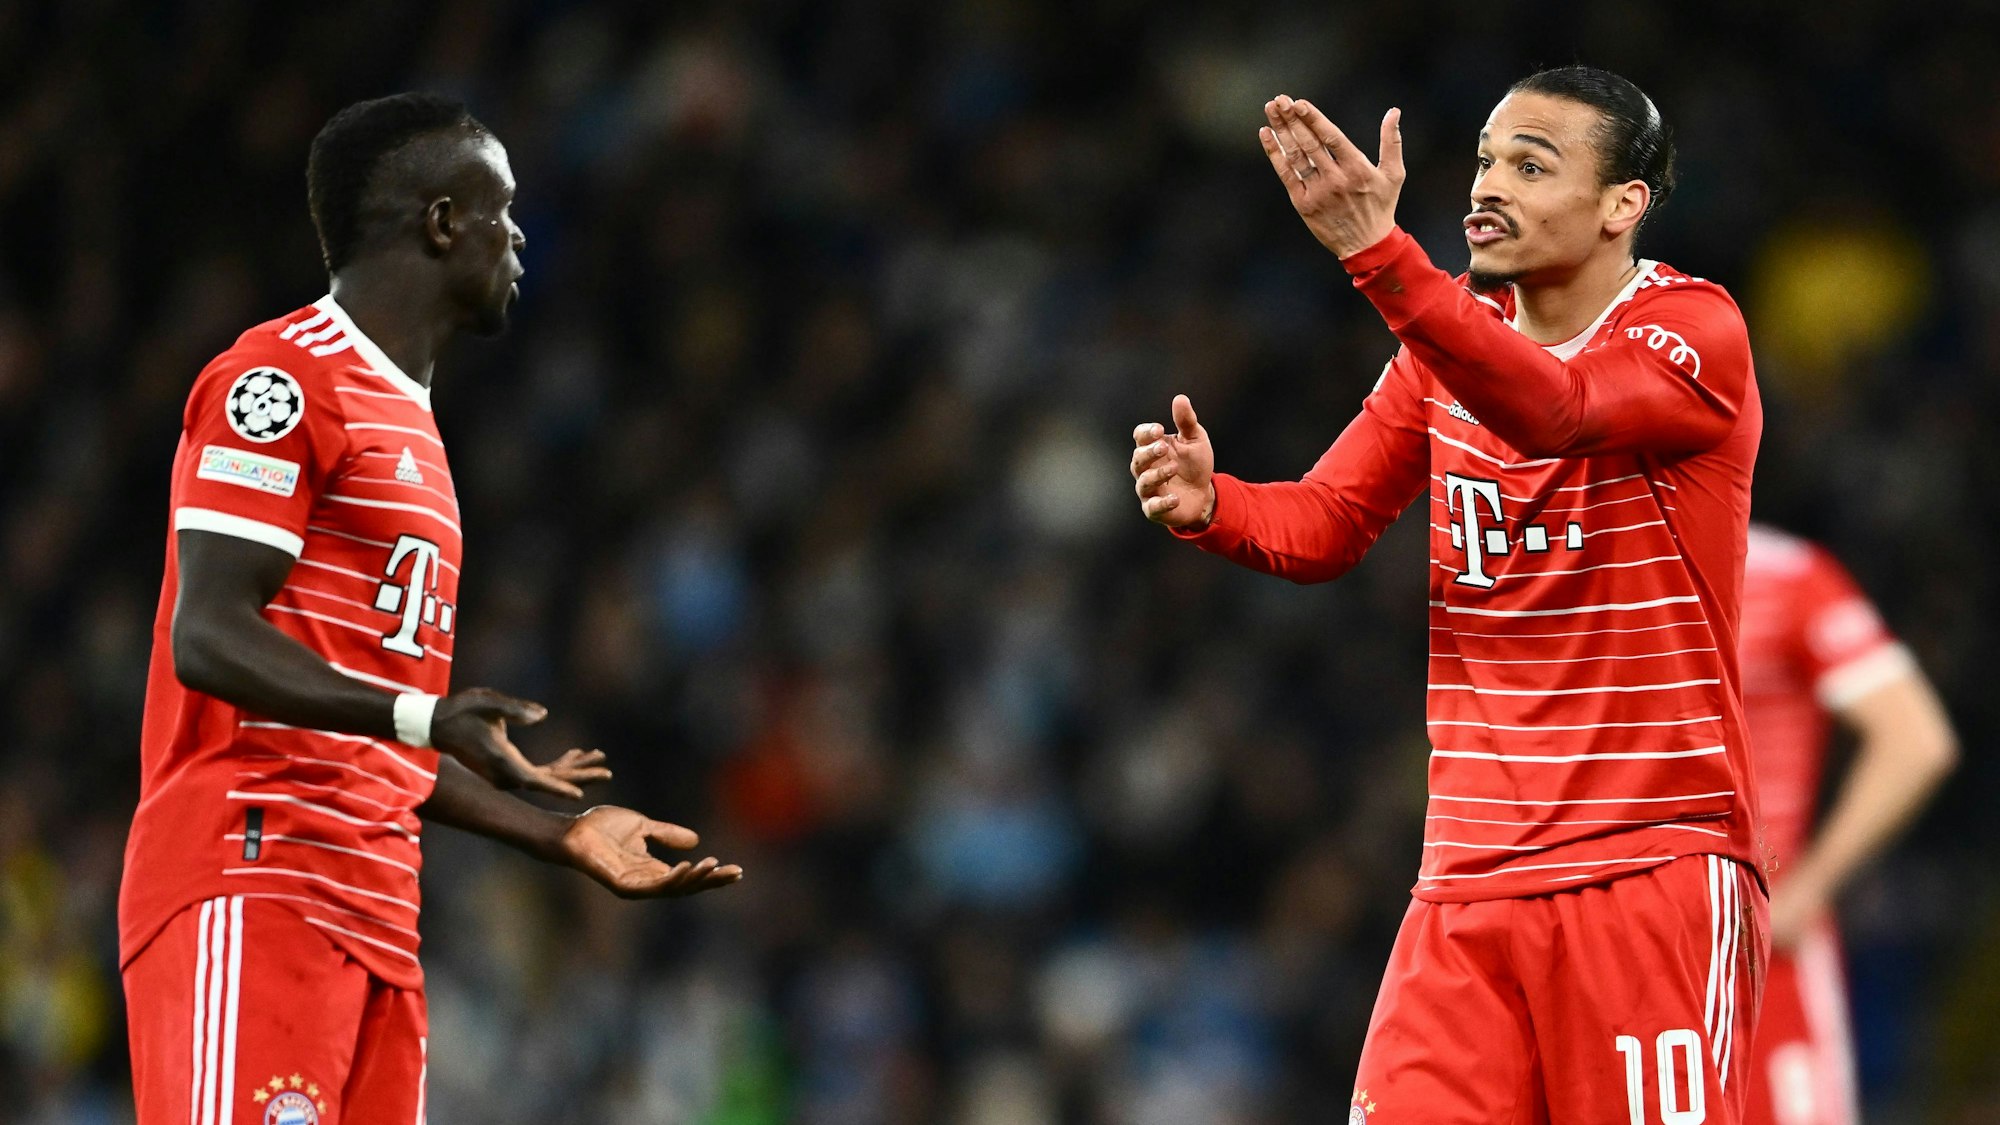 Auseinandersetzung im City-Spiel: Leroy Sané und Sadio Mane diskutieren auf dem Platz. Nach dem Spiel soll es in der Bayern-Kabine sogar zu einem Schlag des ehemaligen Liverpool-Stars gekommen sein.